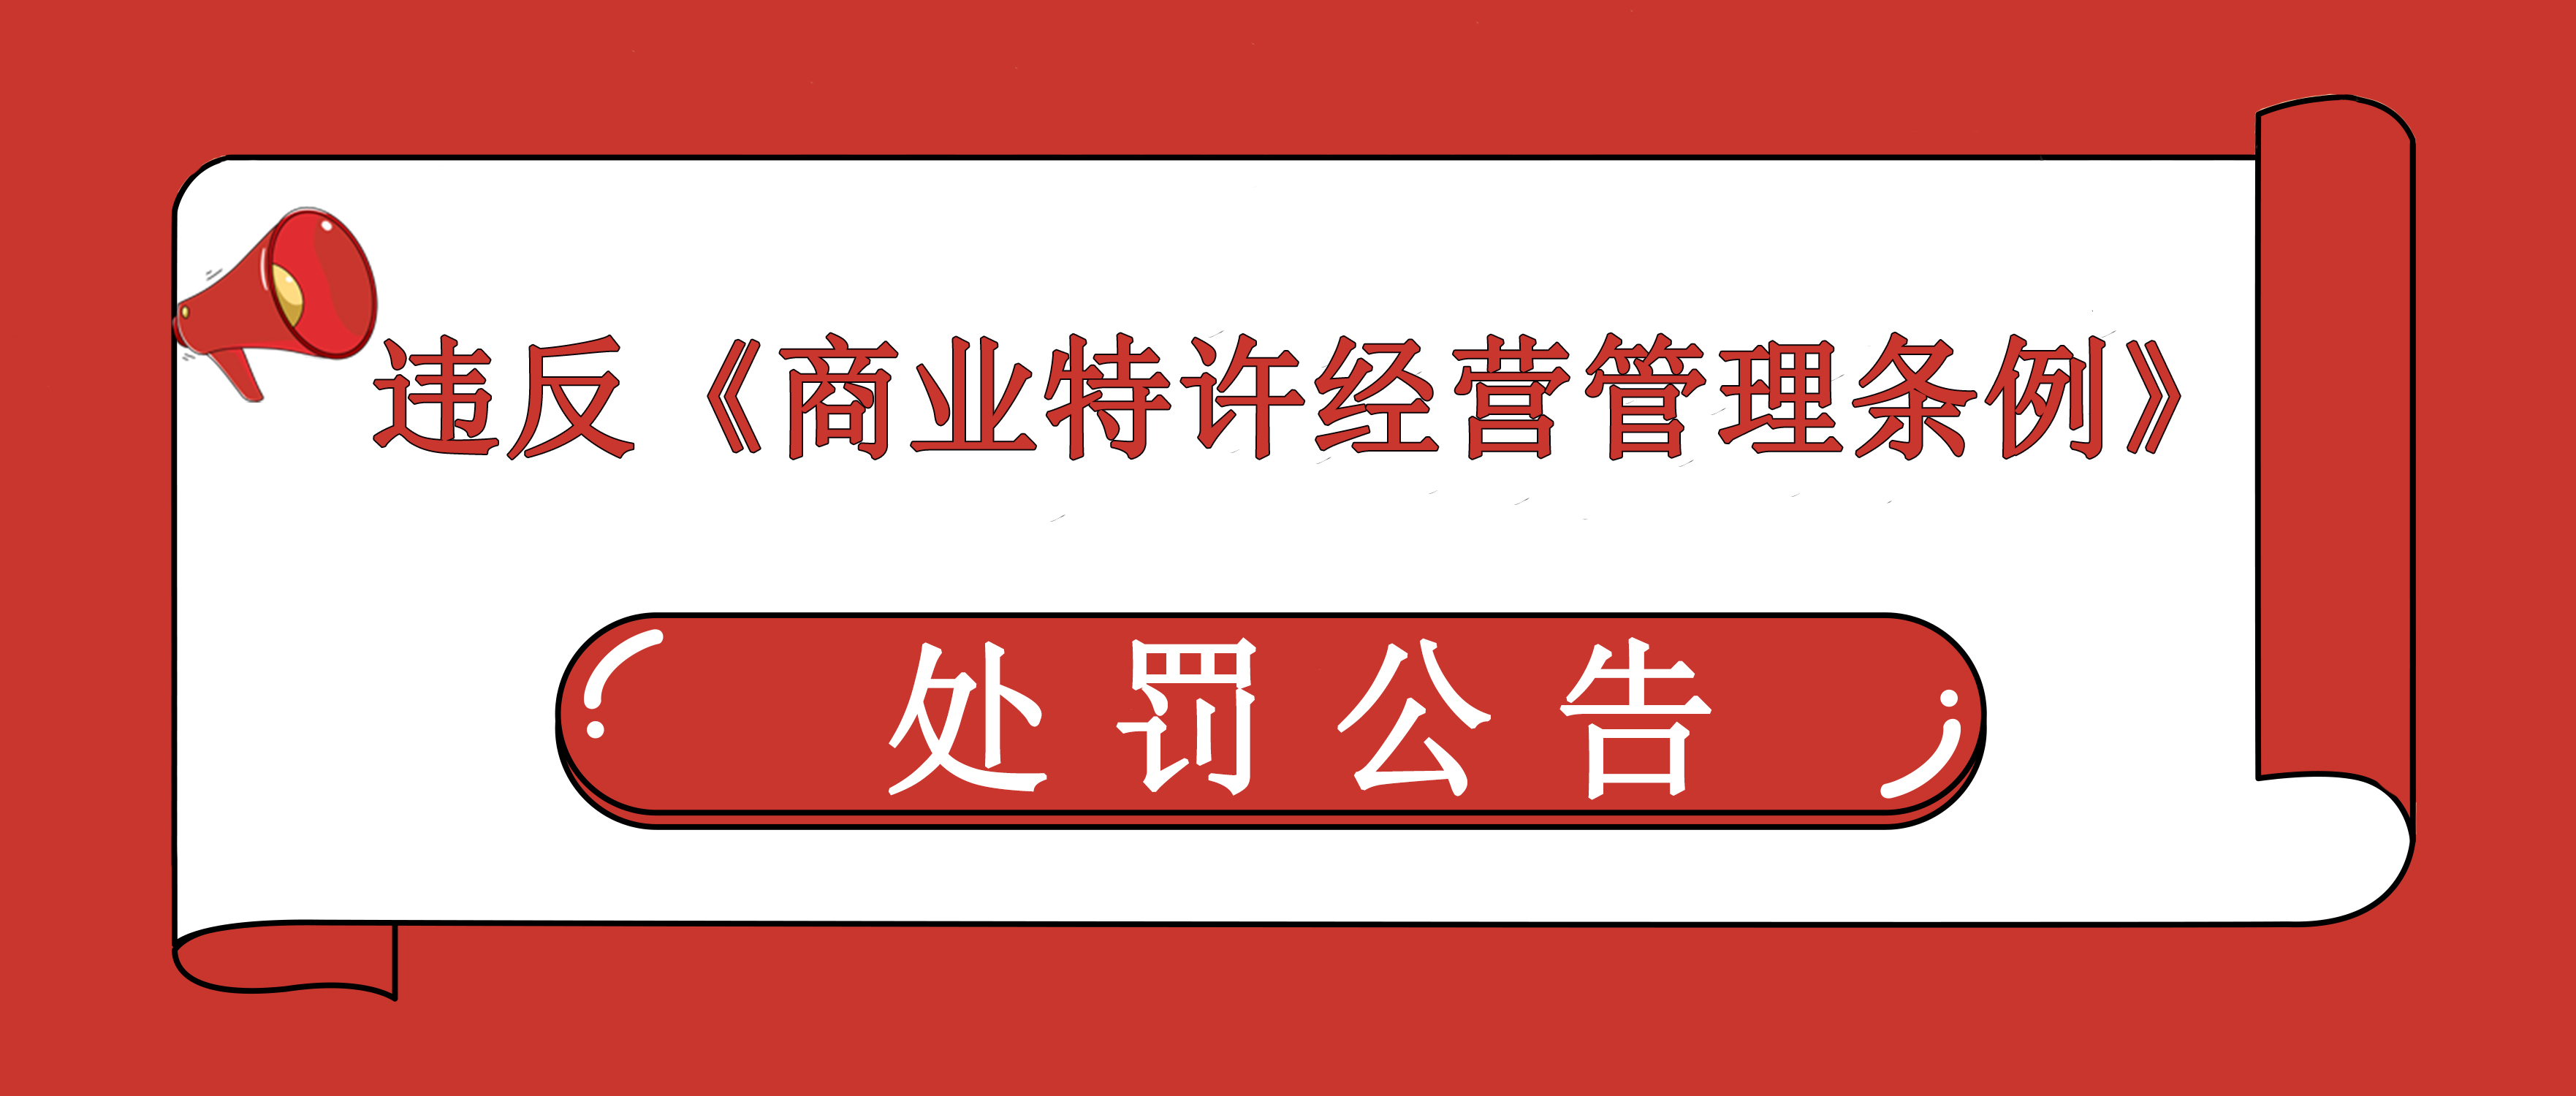 上海龙旗餐饮管理有限公司 未商务备案被罚款3万元